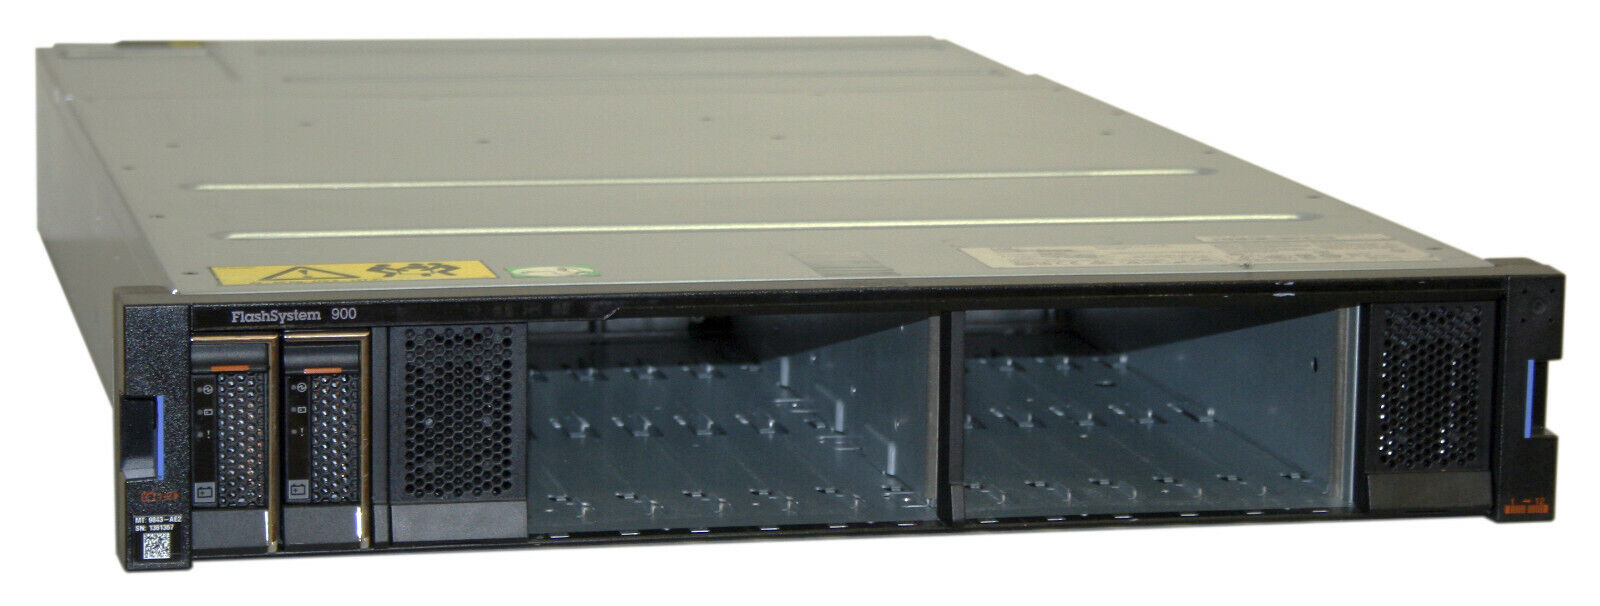 IBM 9843-AE2 FlashSystem 900,16GB RAM, 4* 00DH919 CARDS, NO MICROLATENCY MODULES